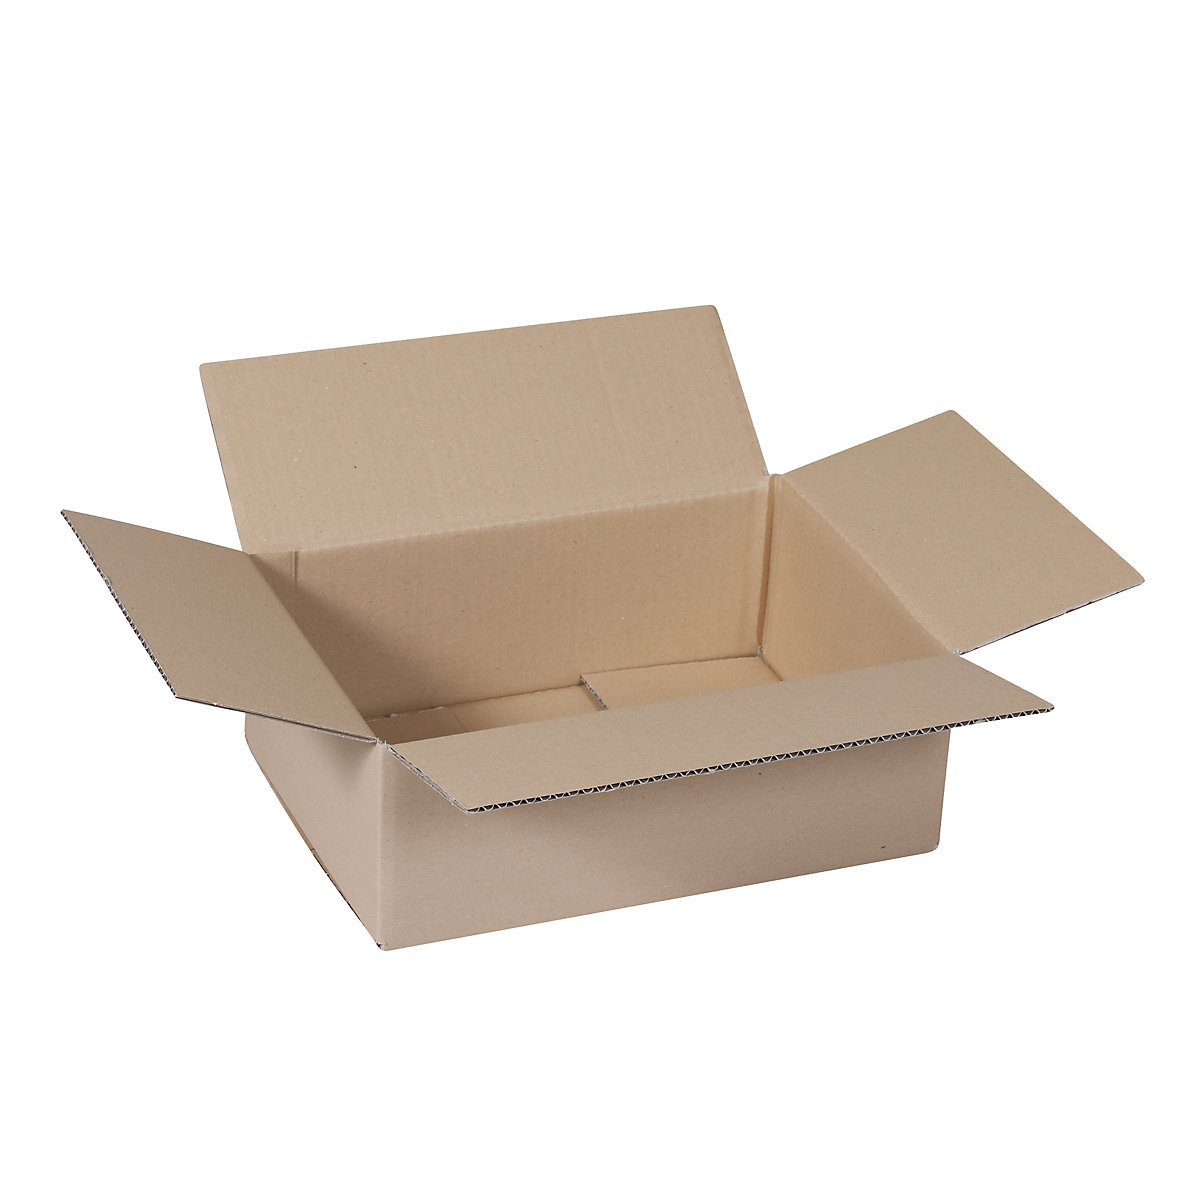 Sklopiva kartonska kutija, FEFCO 0201, od 1-valnog kartona, unutarnje dimenzije 340 x 200 x 150 mm, pak. 50 kom.-26